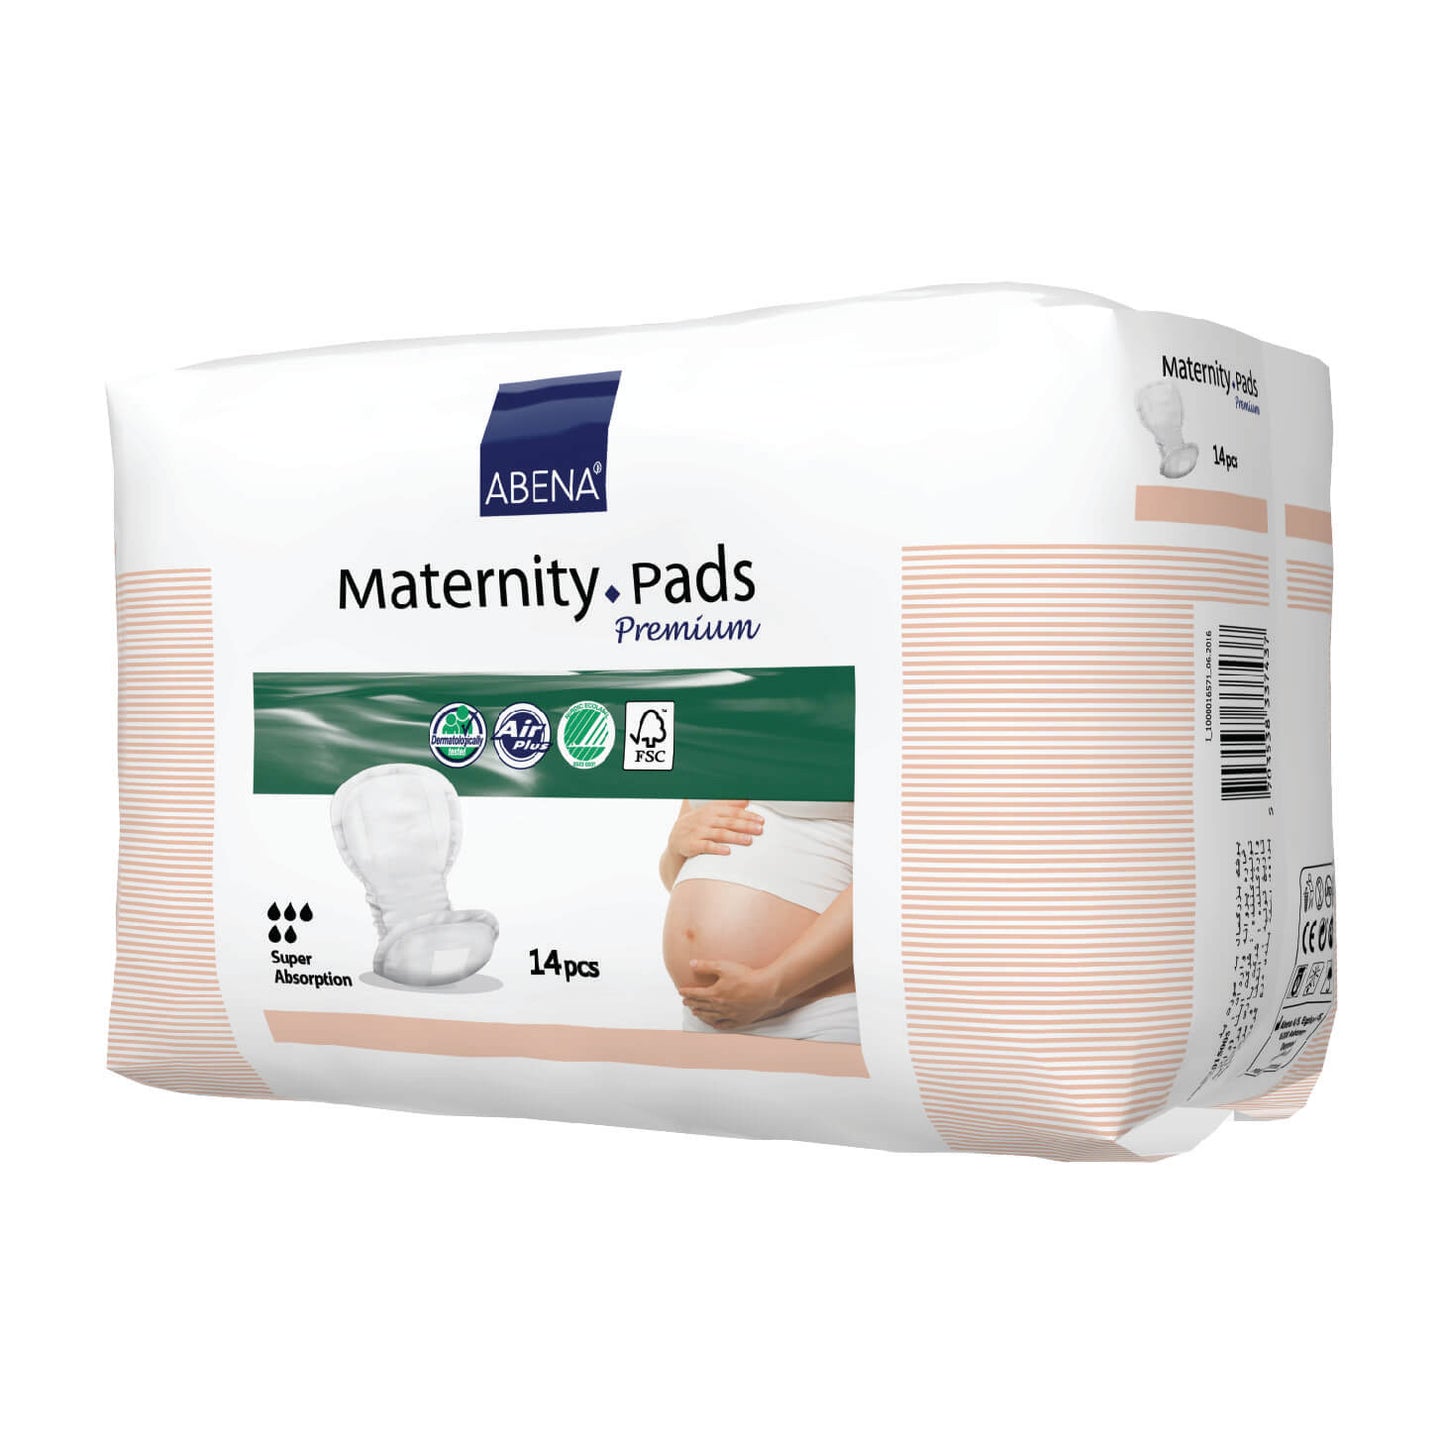 Lunavie Premium Maternity Overnight Pads (36cm x 20 Pcs)